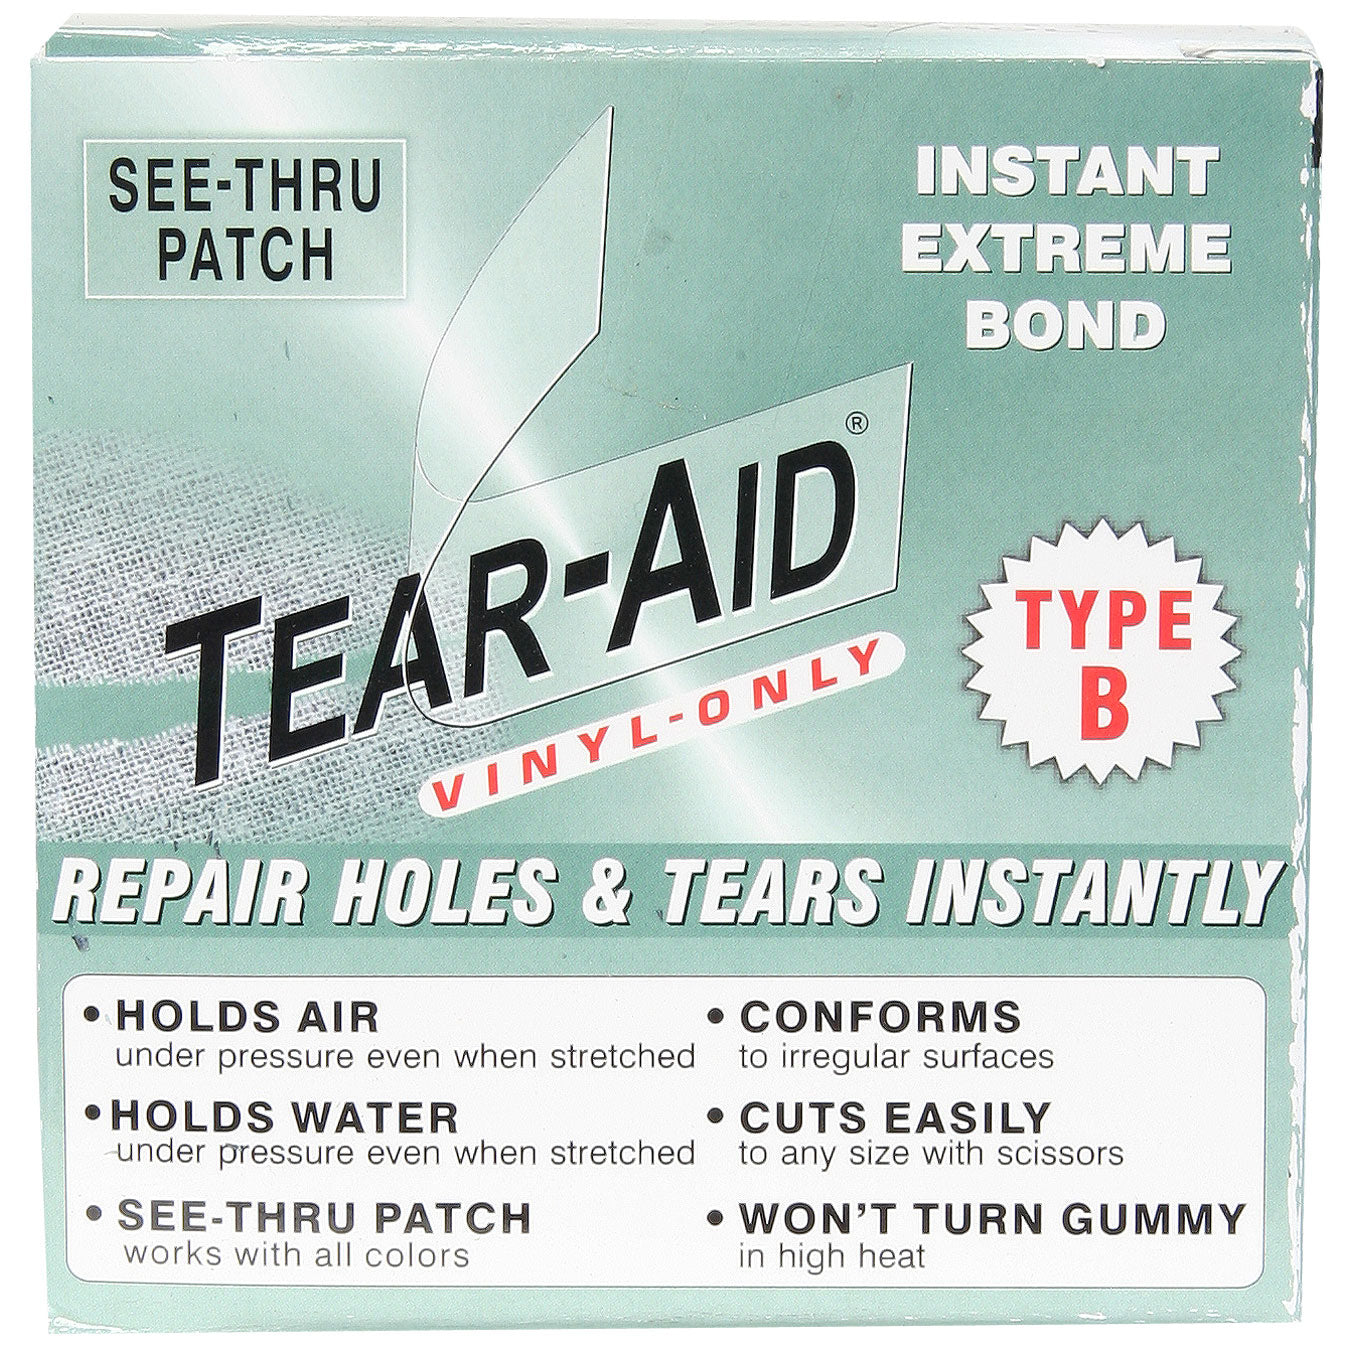 Tear-aid